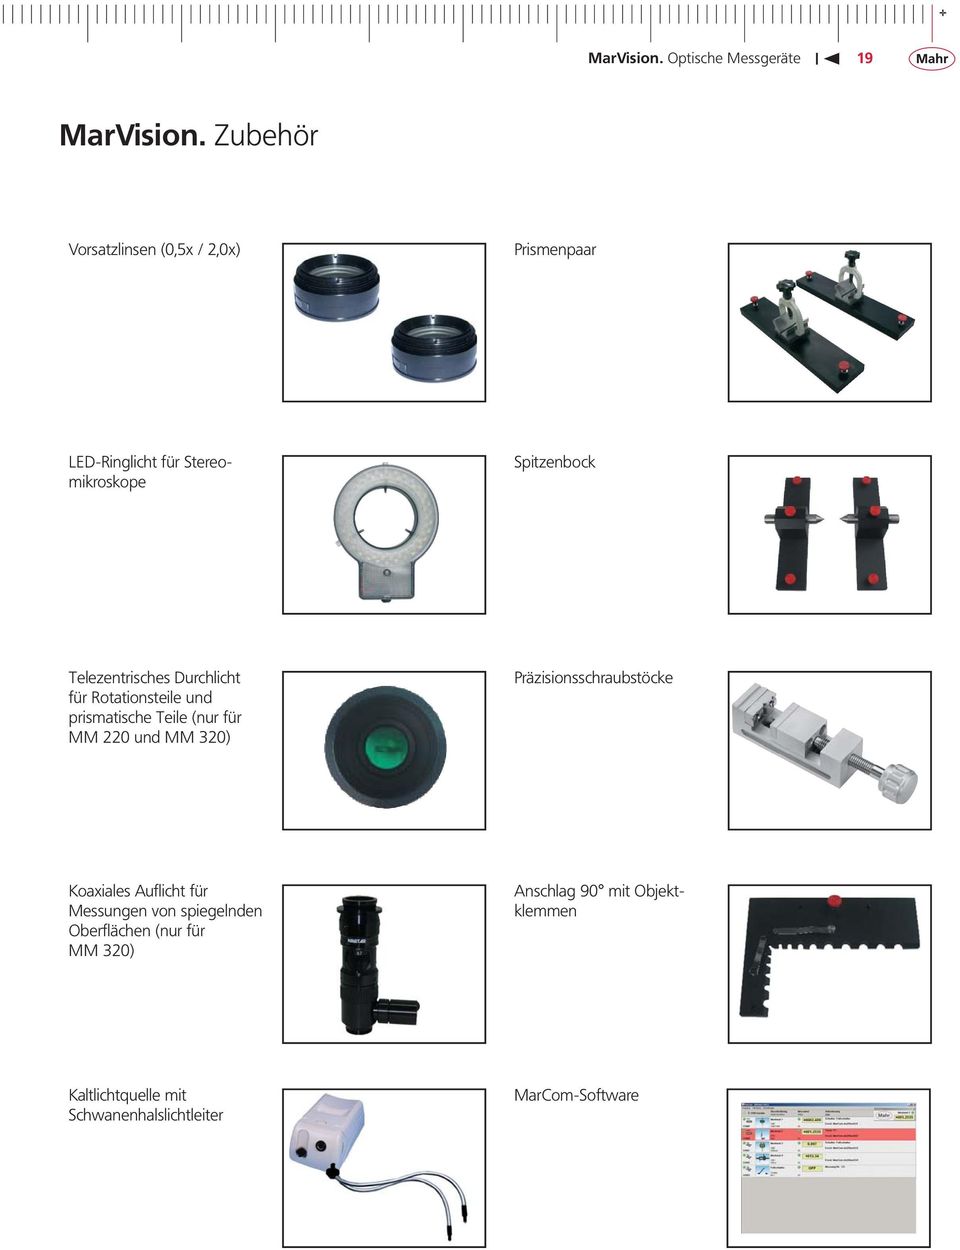 Telezentrisches Durchlicht für Rotationsteile und prismatische Teile (nur für MM 220 und MM 320)